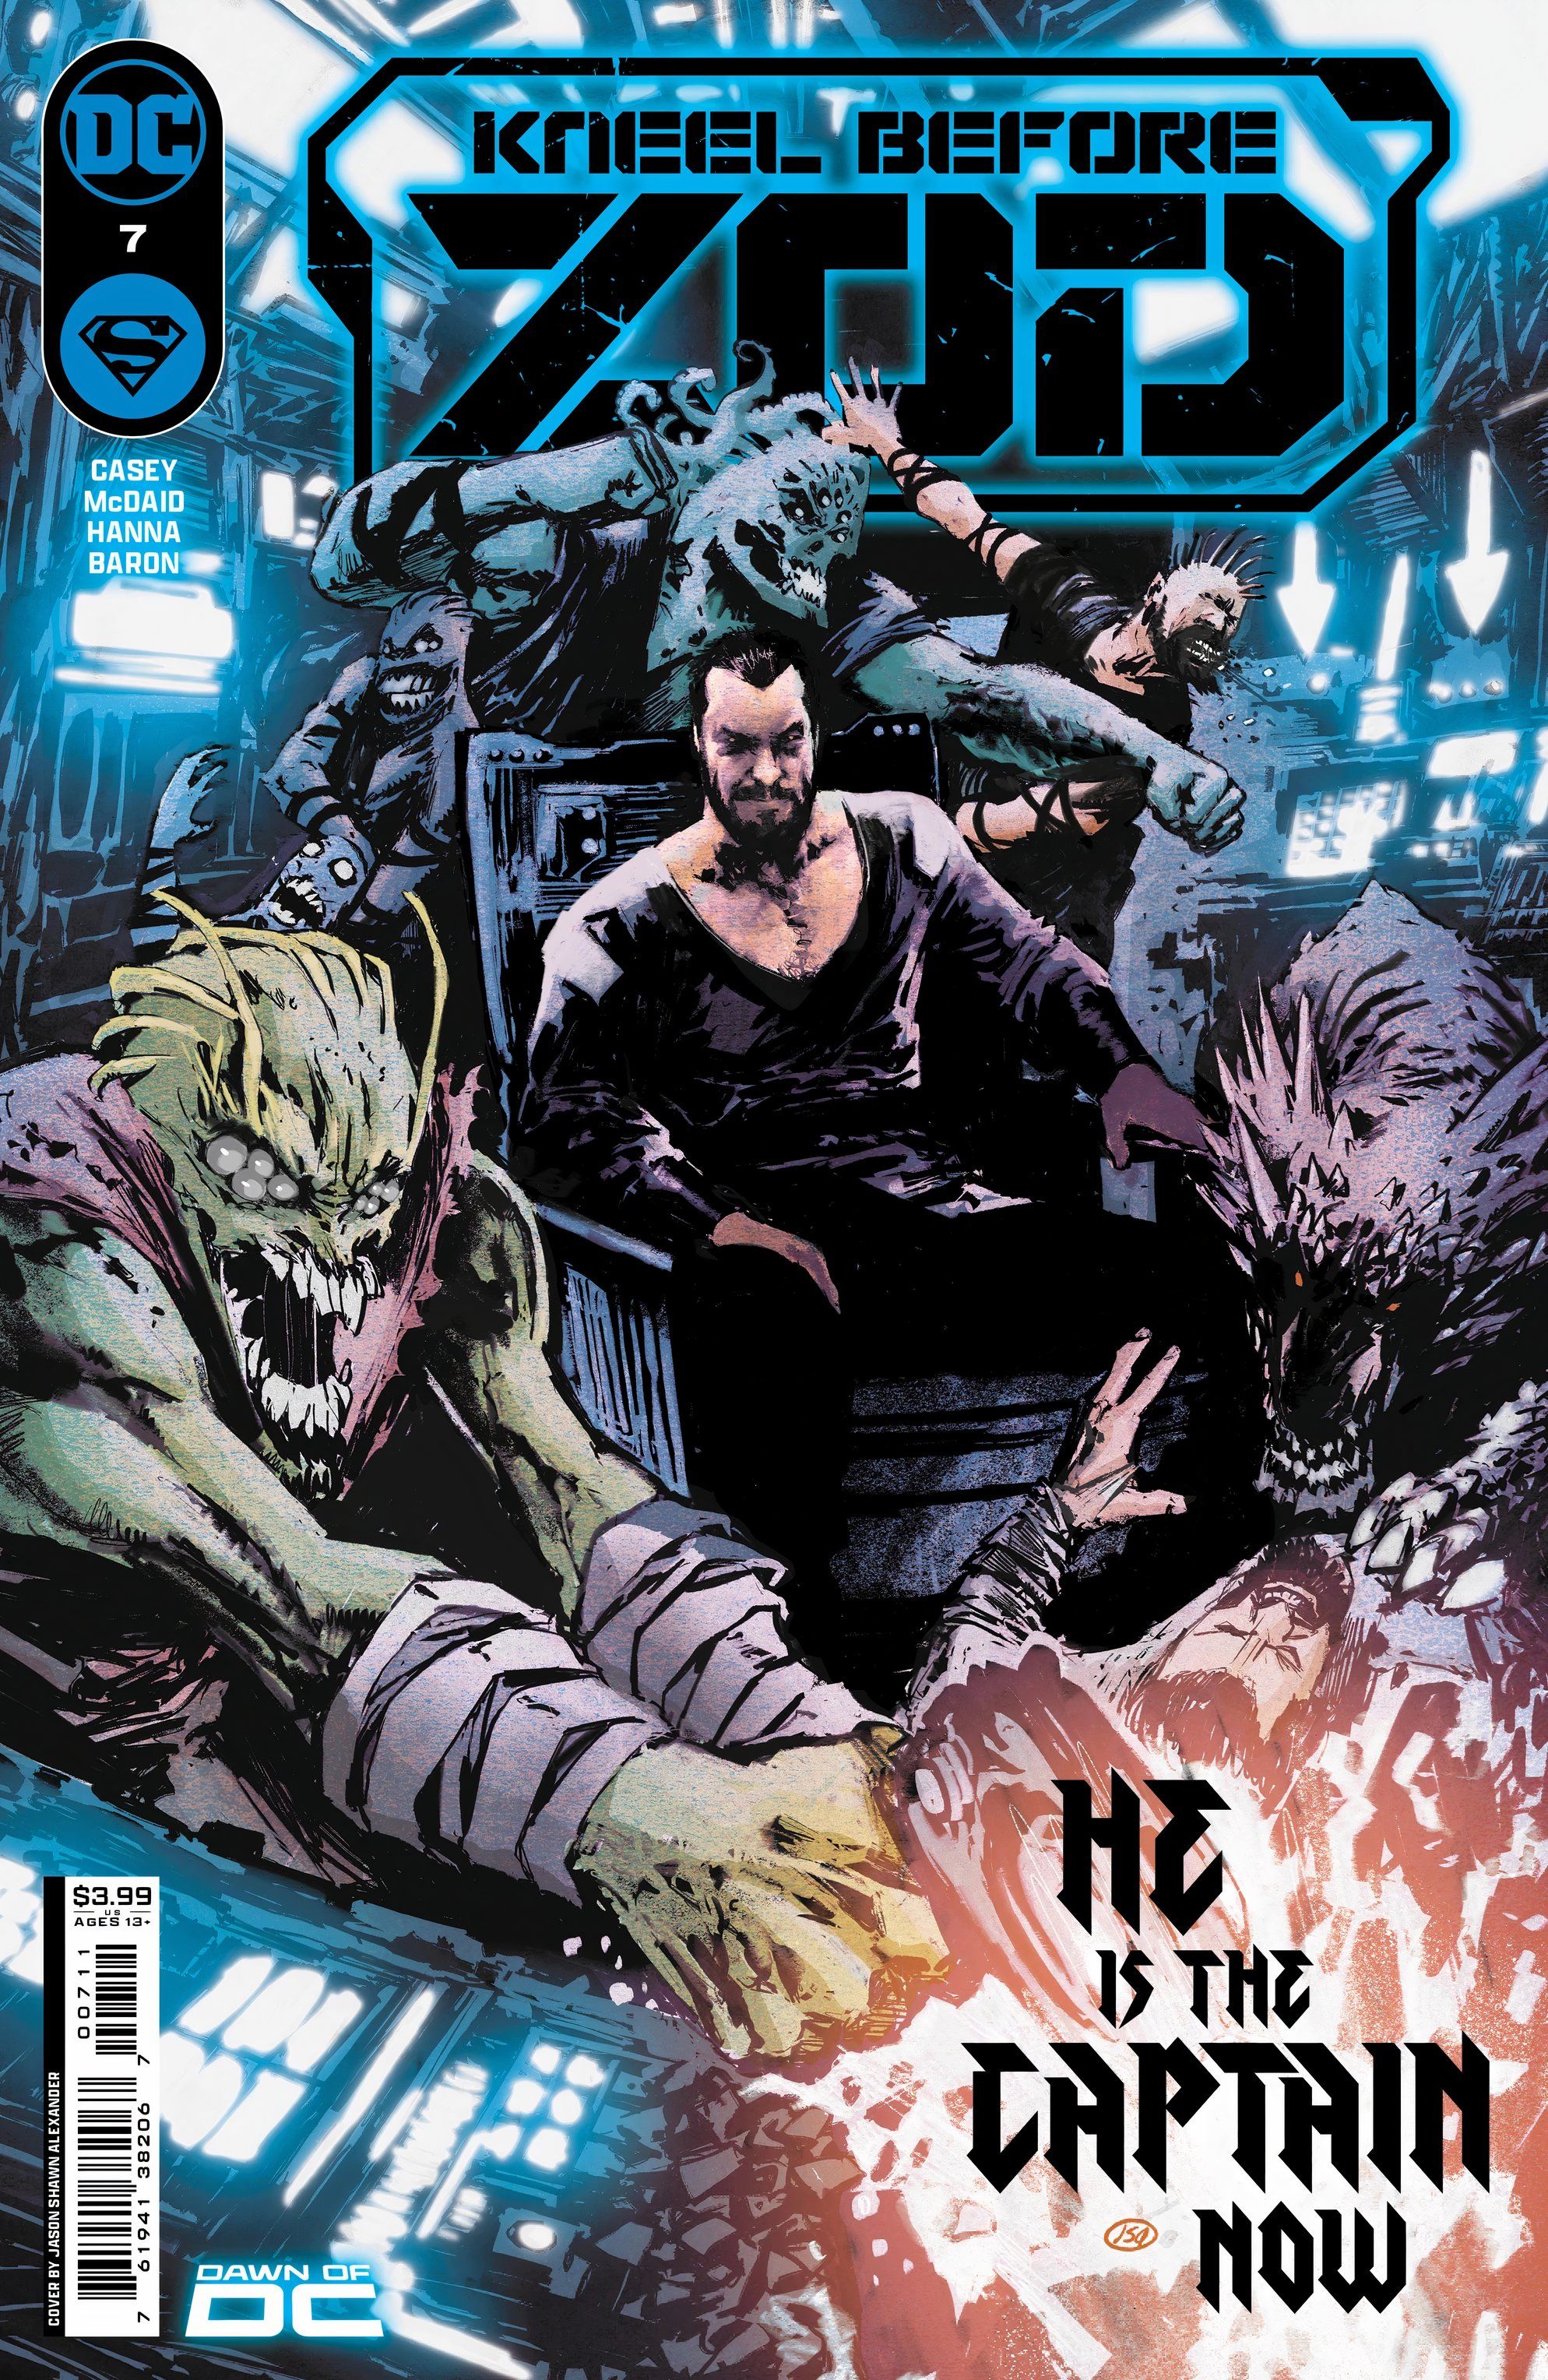 Na capa da revista Kneel Before Zod #7, o General Zod está sentado na cadeira do capitão em uma nave estelar.